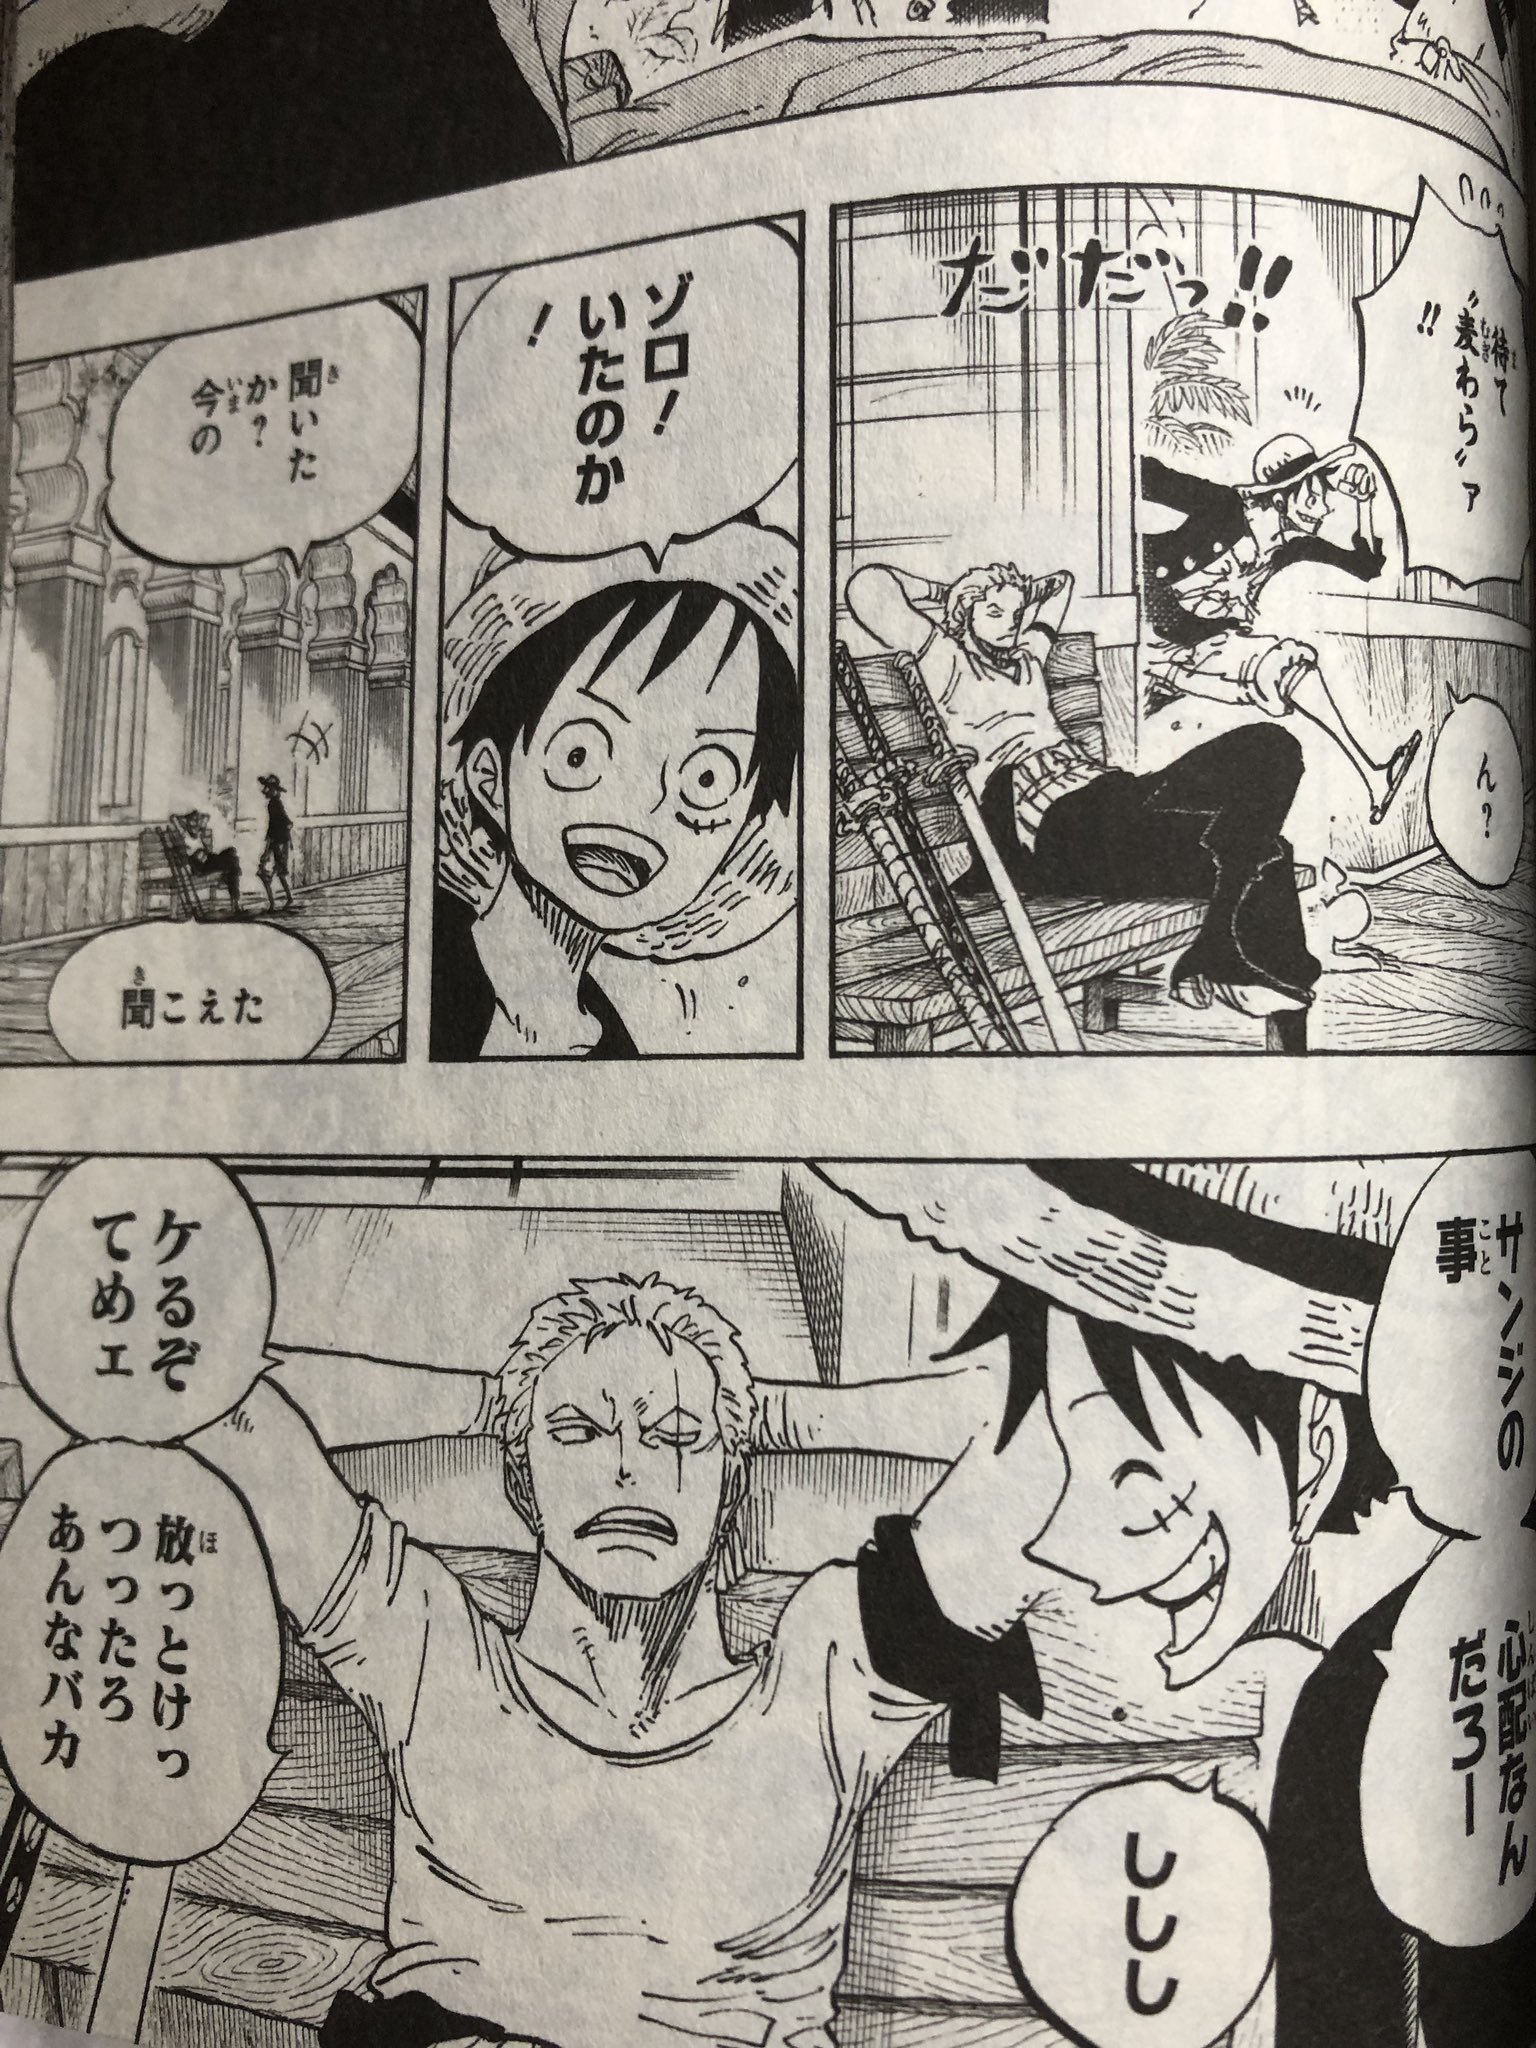 One Piece大好きなはーくん ゾウ編 のヴィンスモーク サンジがどうしていなくなったか 結婚したらどうなるかをペコマムシが説明した時にこっそり聞いていたゾロのシーン いつもなら 斬るぞ てめぇ と 言うはずなのに ここでは ケるぞてめぇ